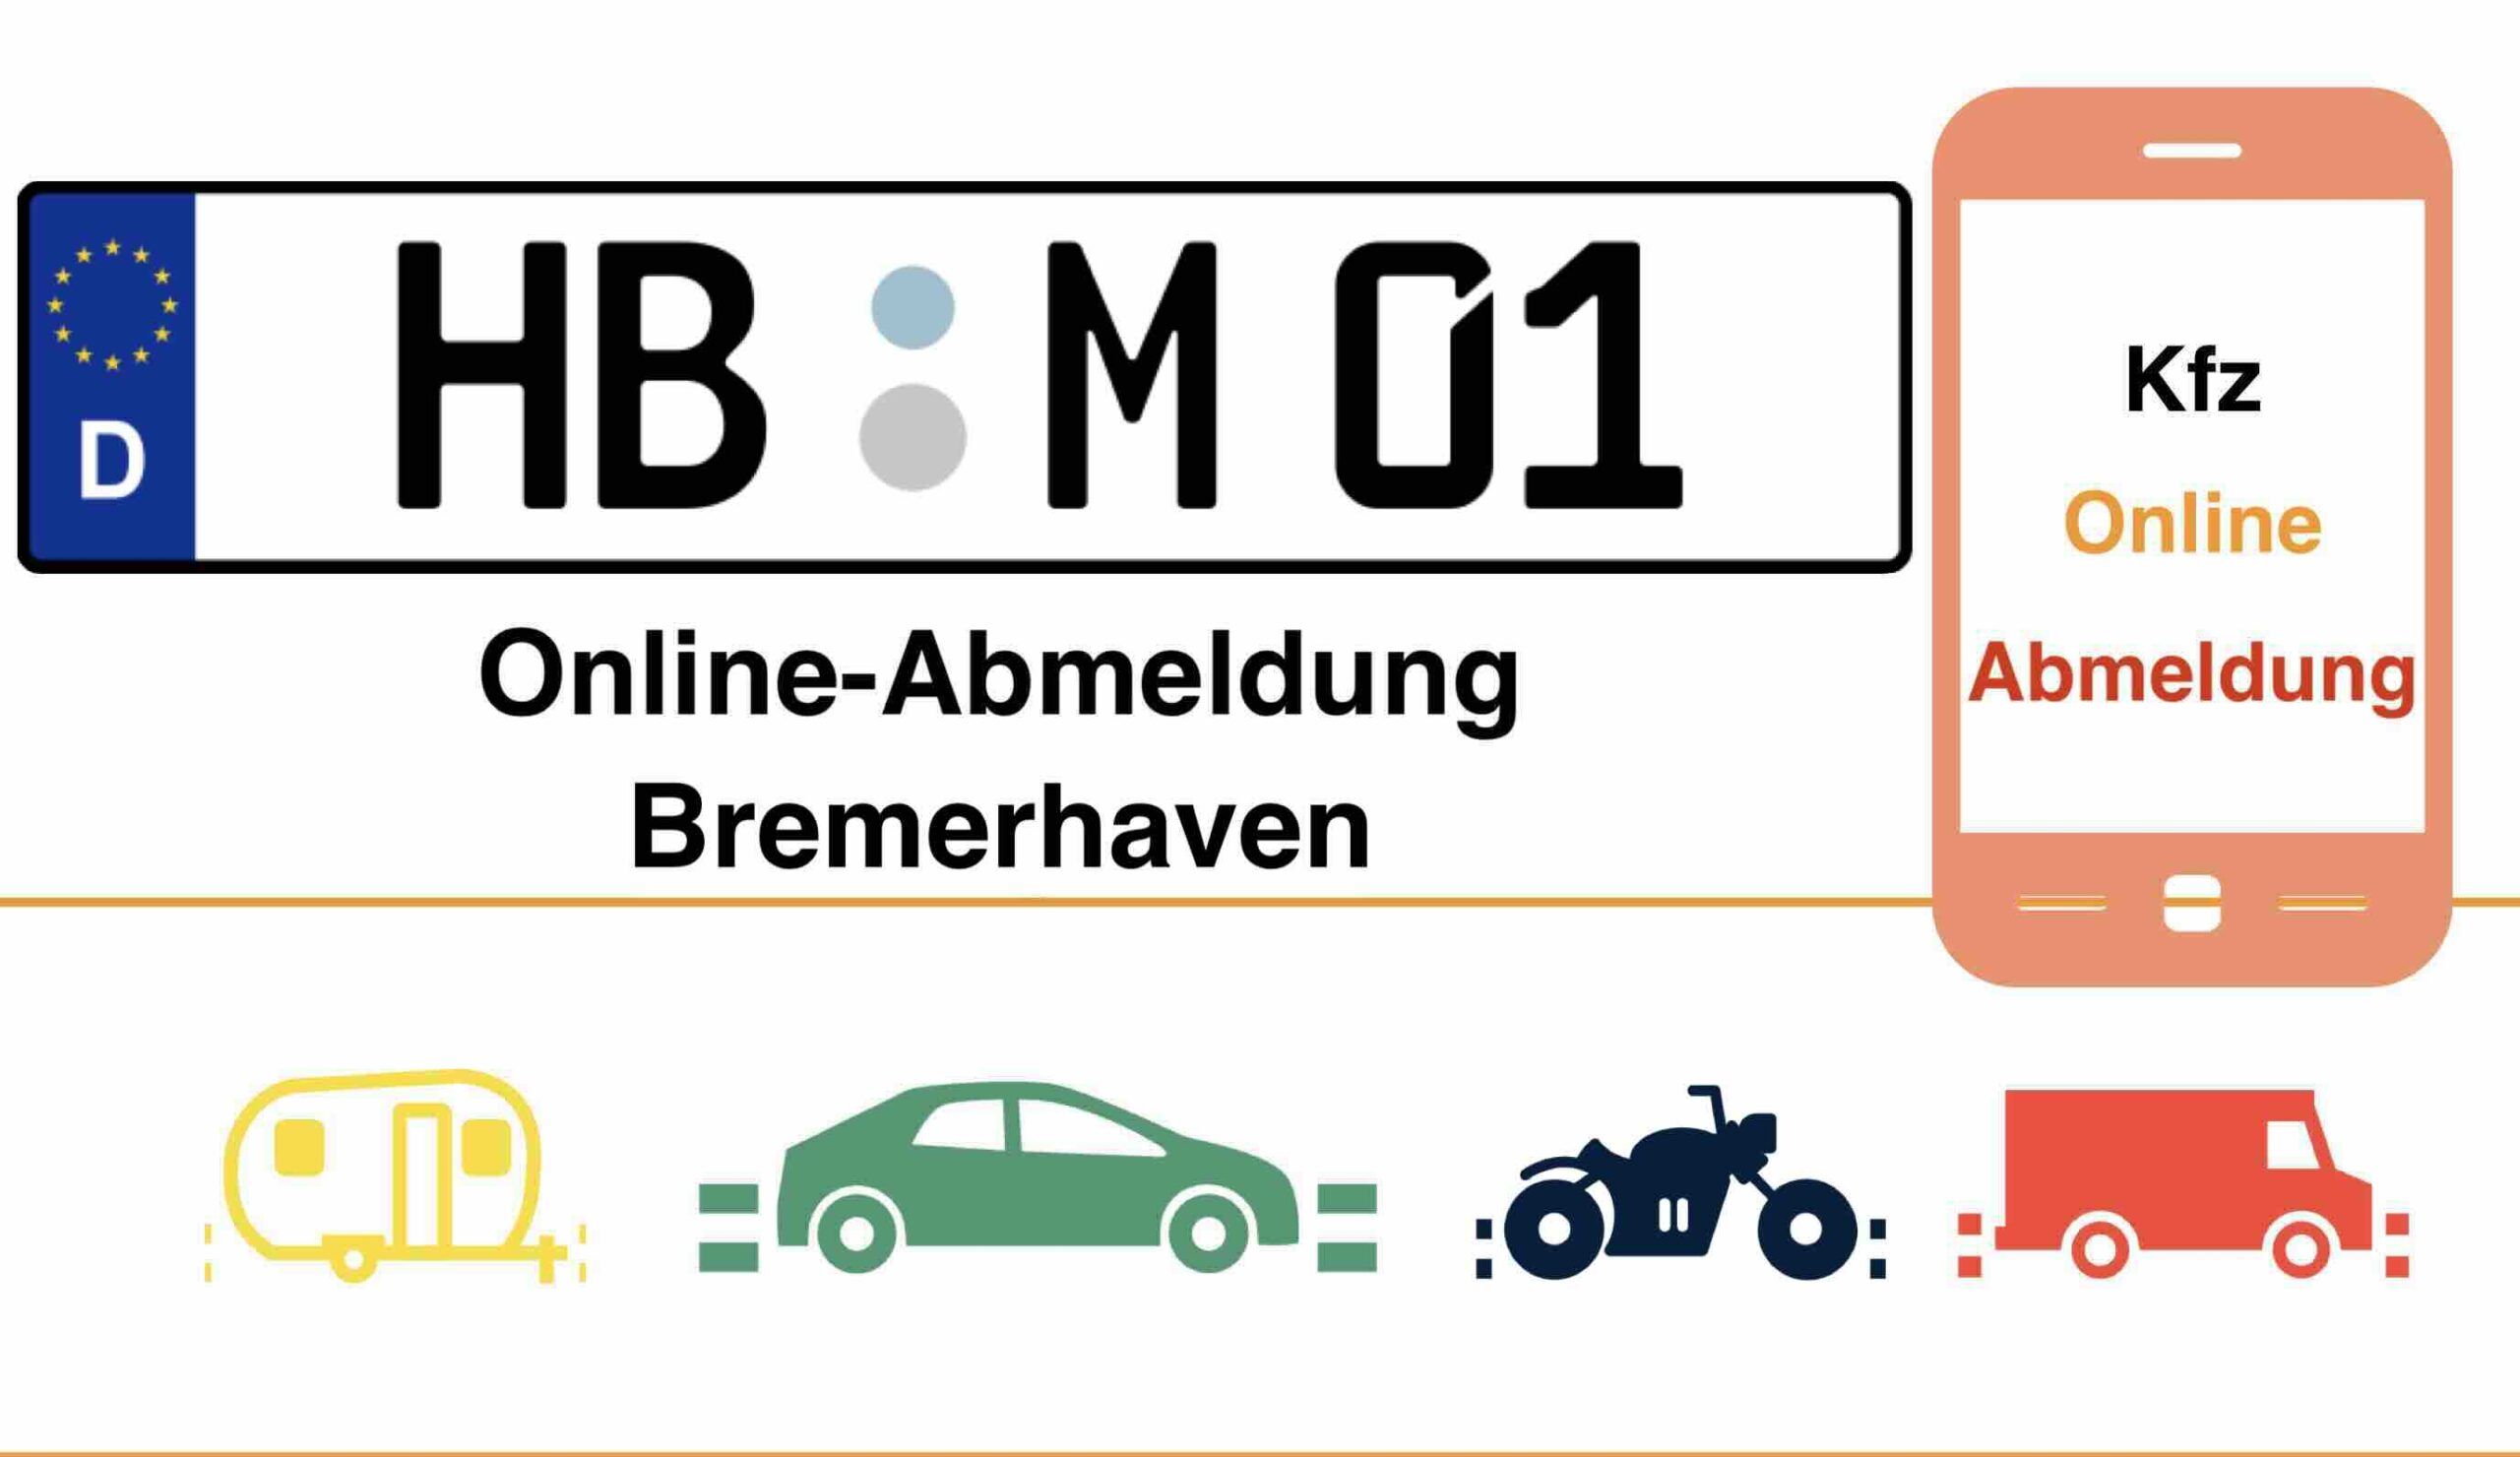 Online-Abmeldung in Bremerhaven 